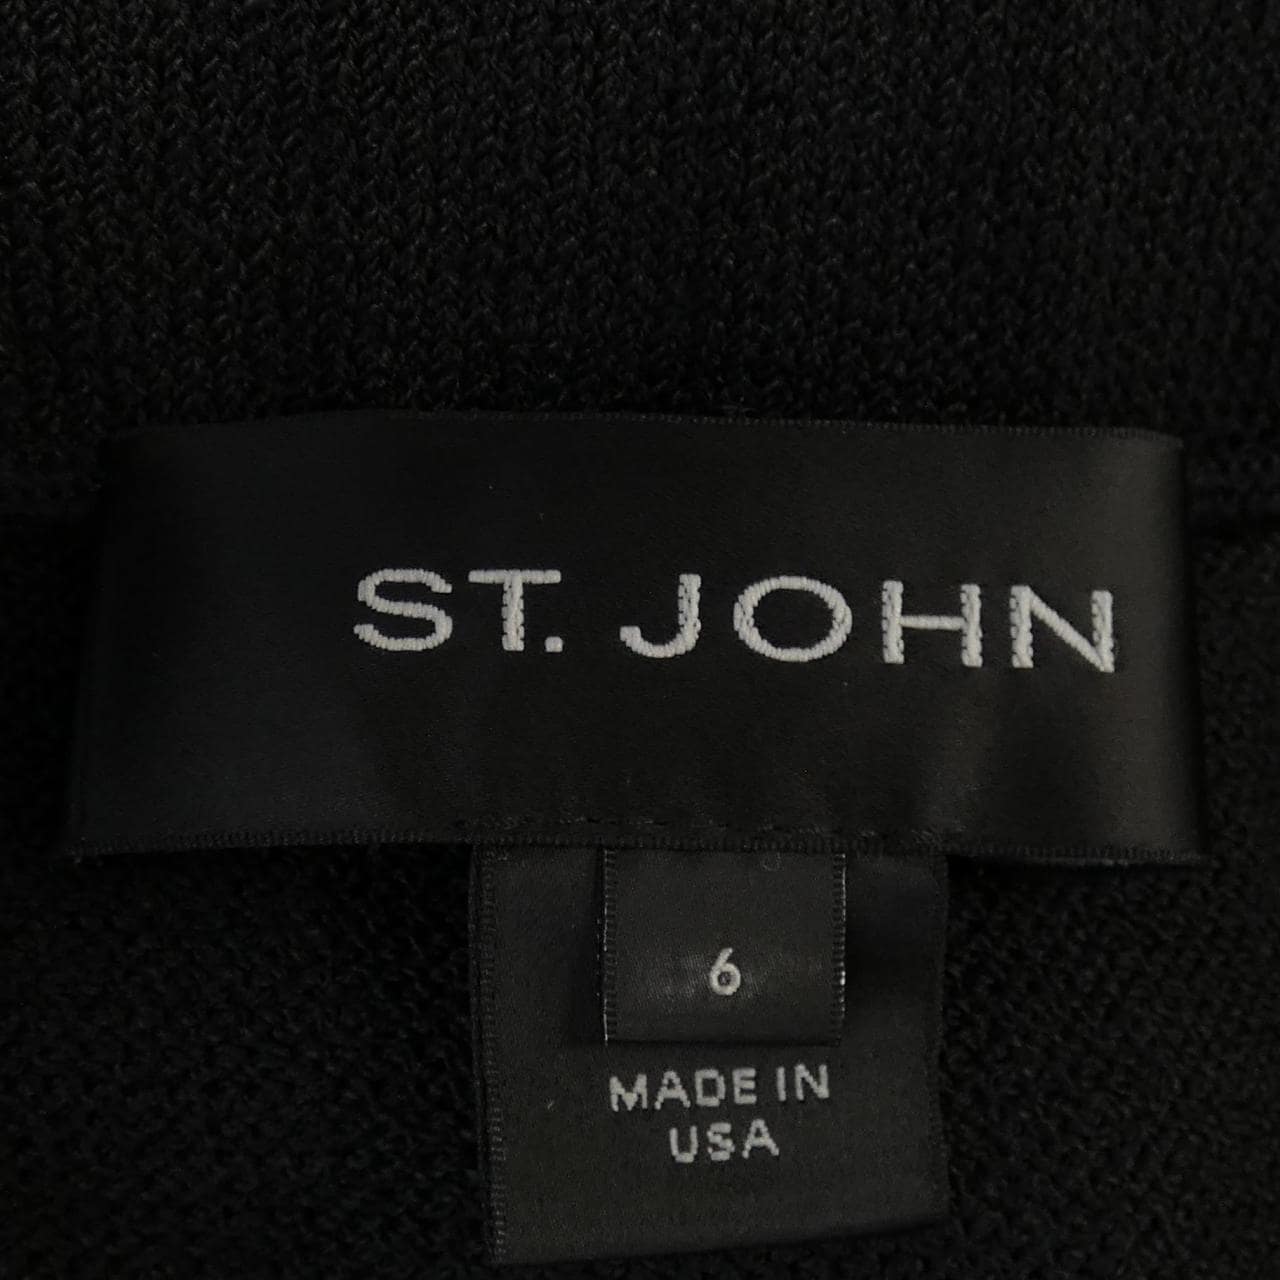 St. John ST.JOHN Skirt